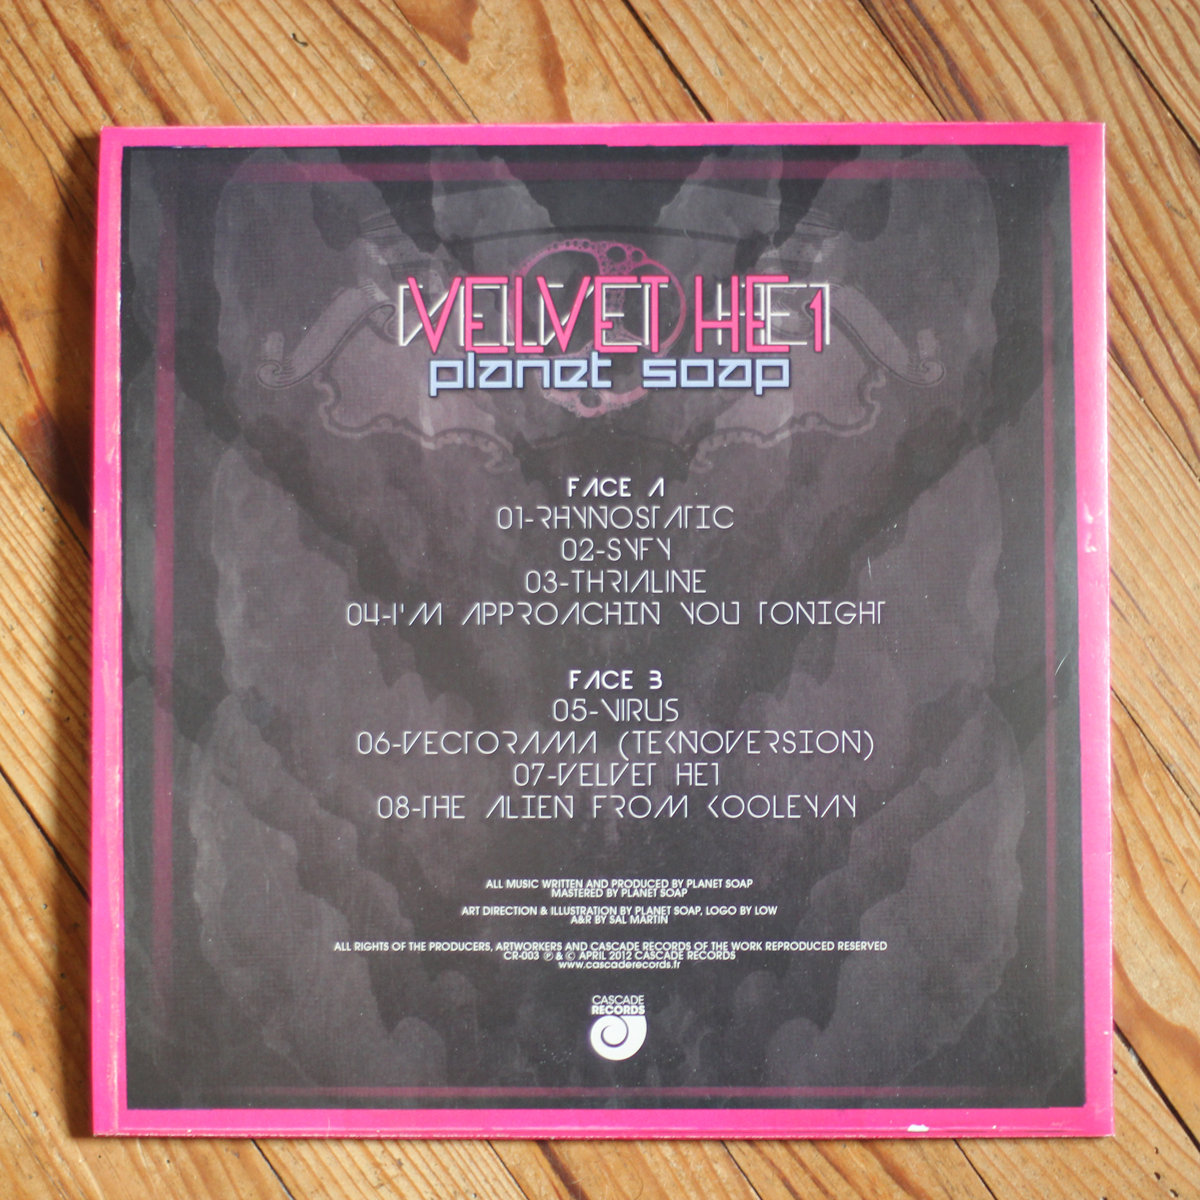 Planet Soap - Velvet He1 - bass, techno, electronic musci dubstep house back cover vinyl